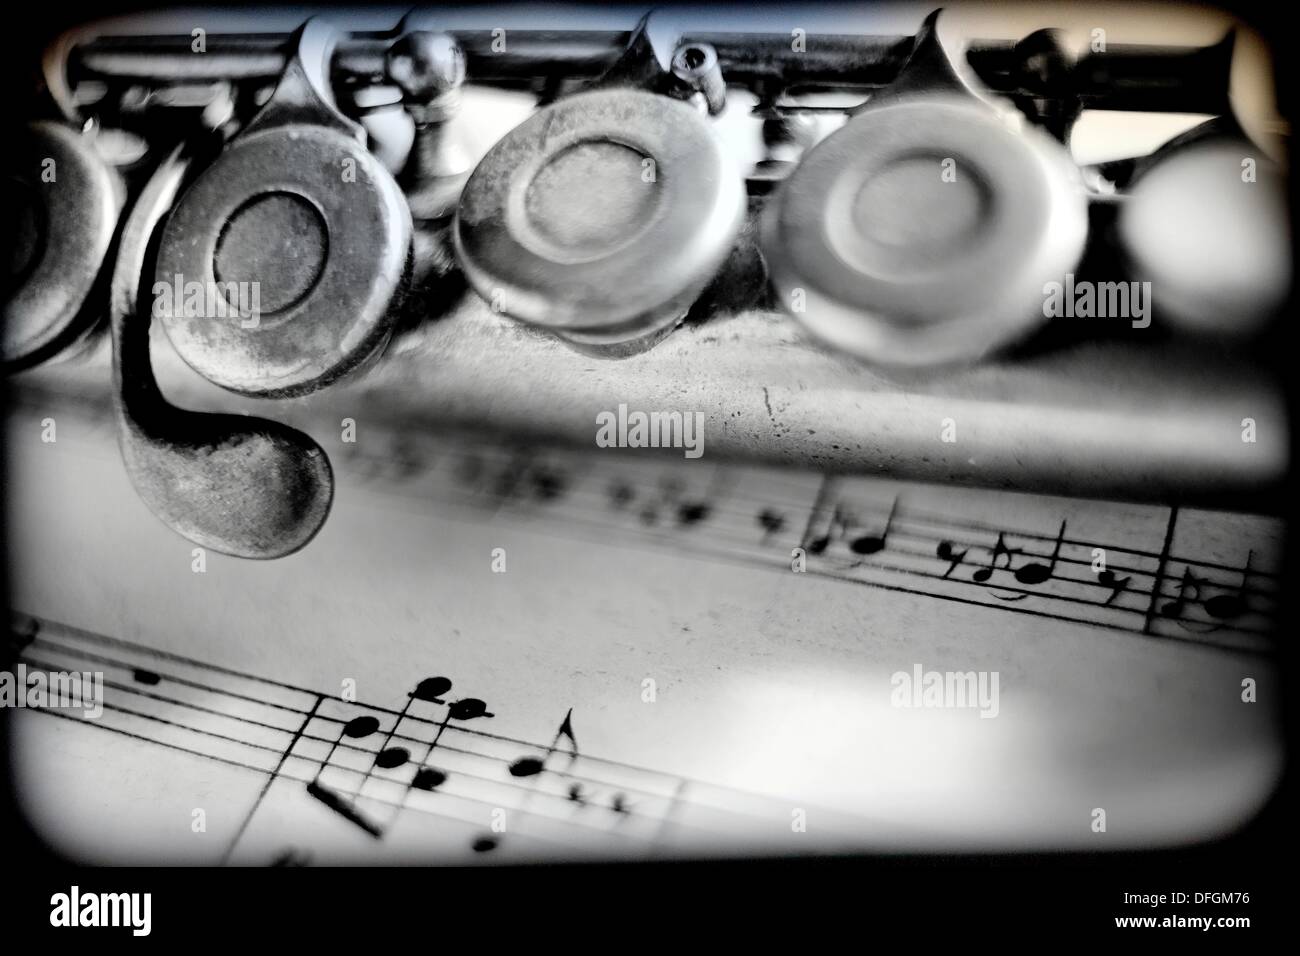 Musica, instrumento musical, flauta travesera, partitura de musica, Music,  musical instrument, flute, score music Stock Photo - Alamy